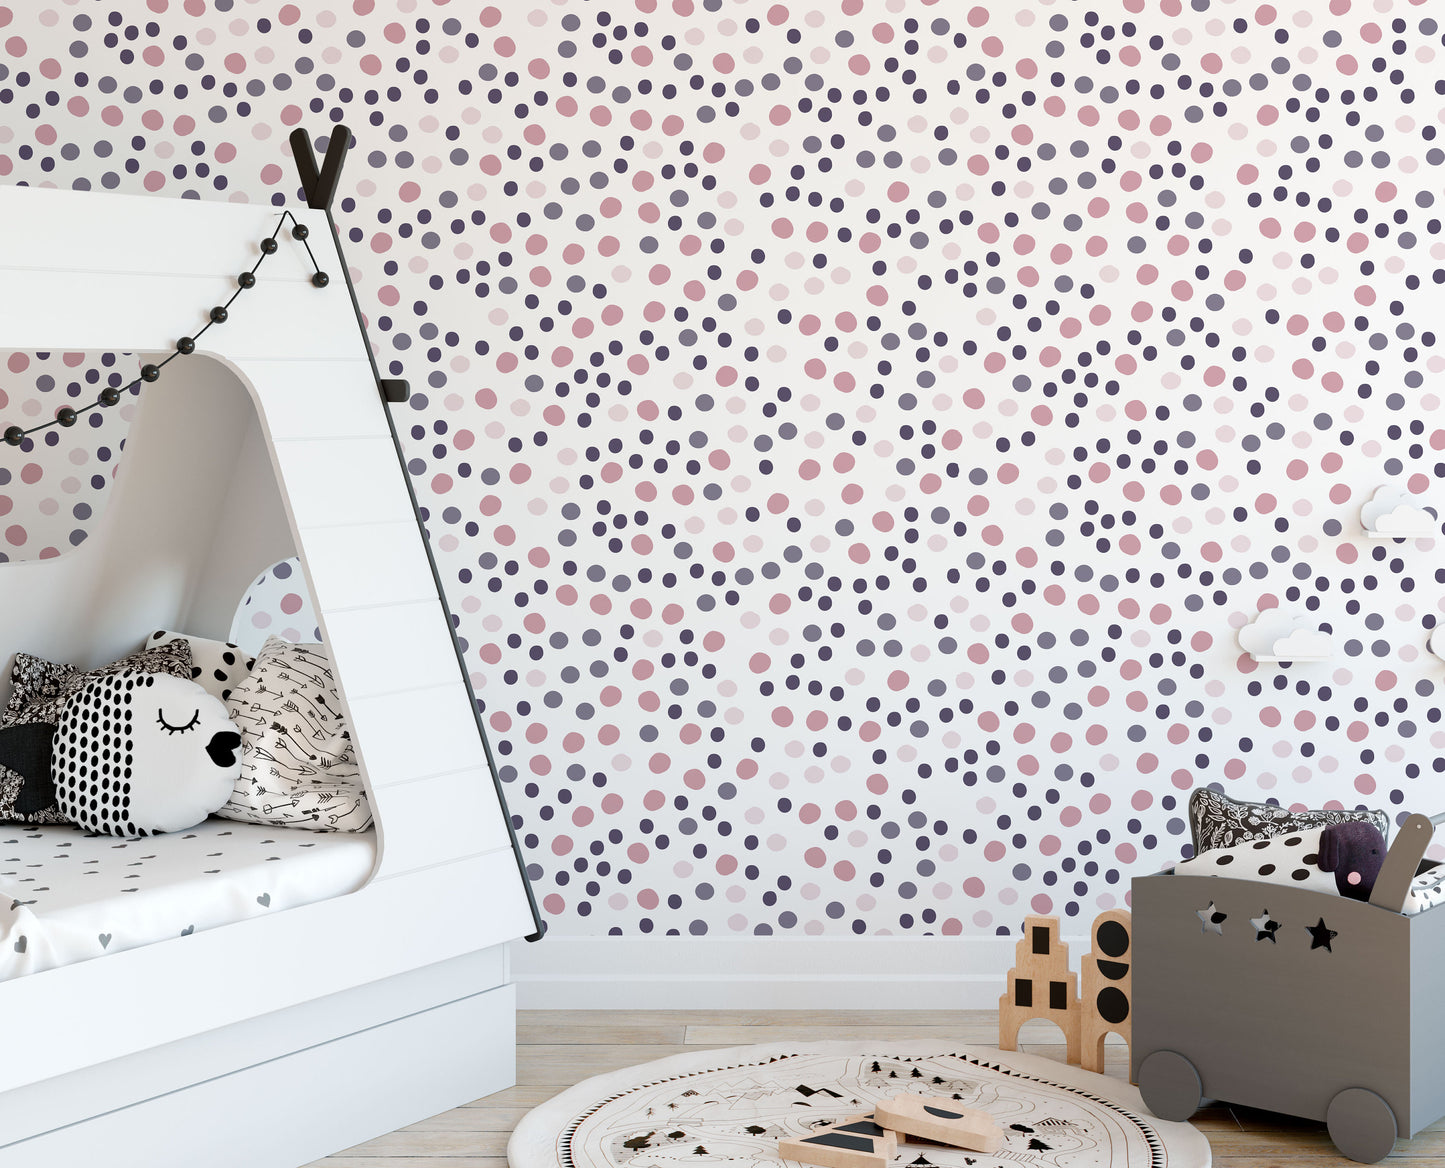 180 Mini Pastel Irregular Polka Dot Wall Stickers